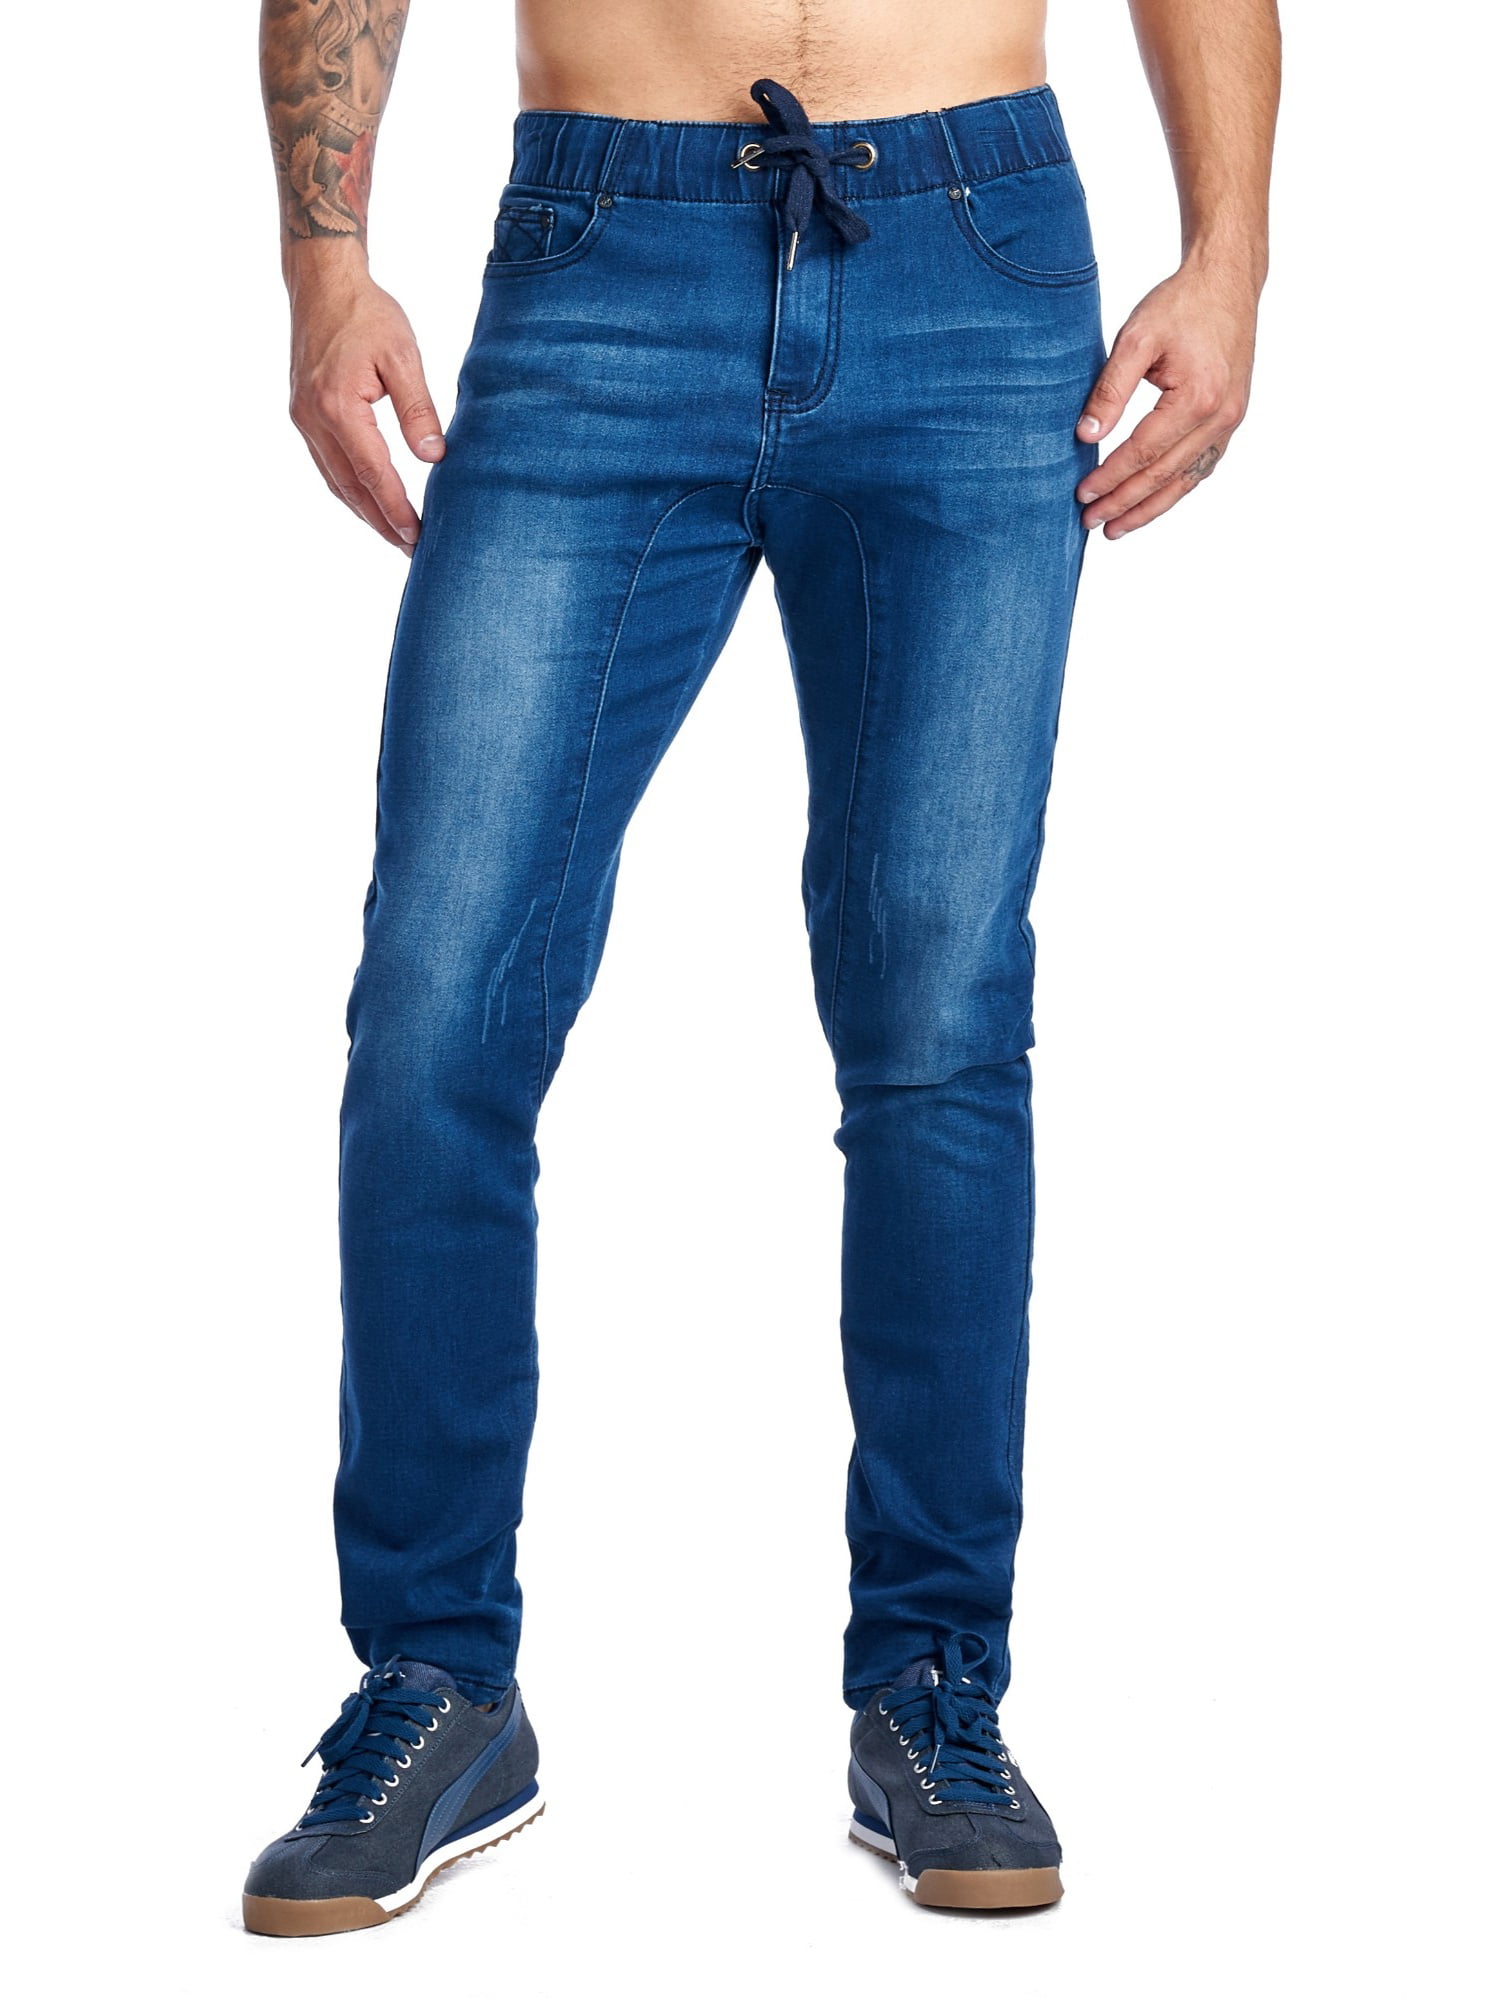 A Jeans  A Jeans  Men s  Denim  Pant  Jogger  Styling Slim Fit 